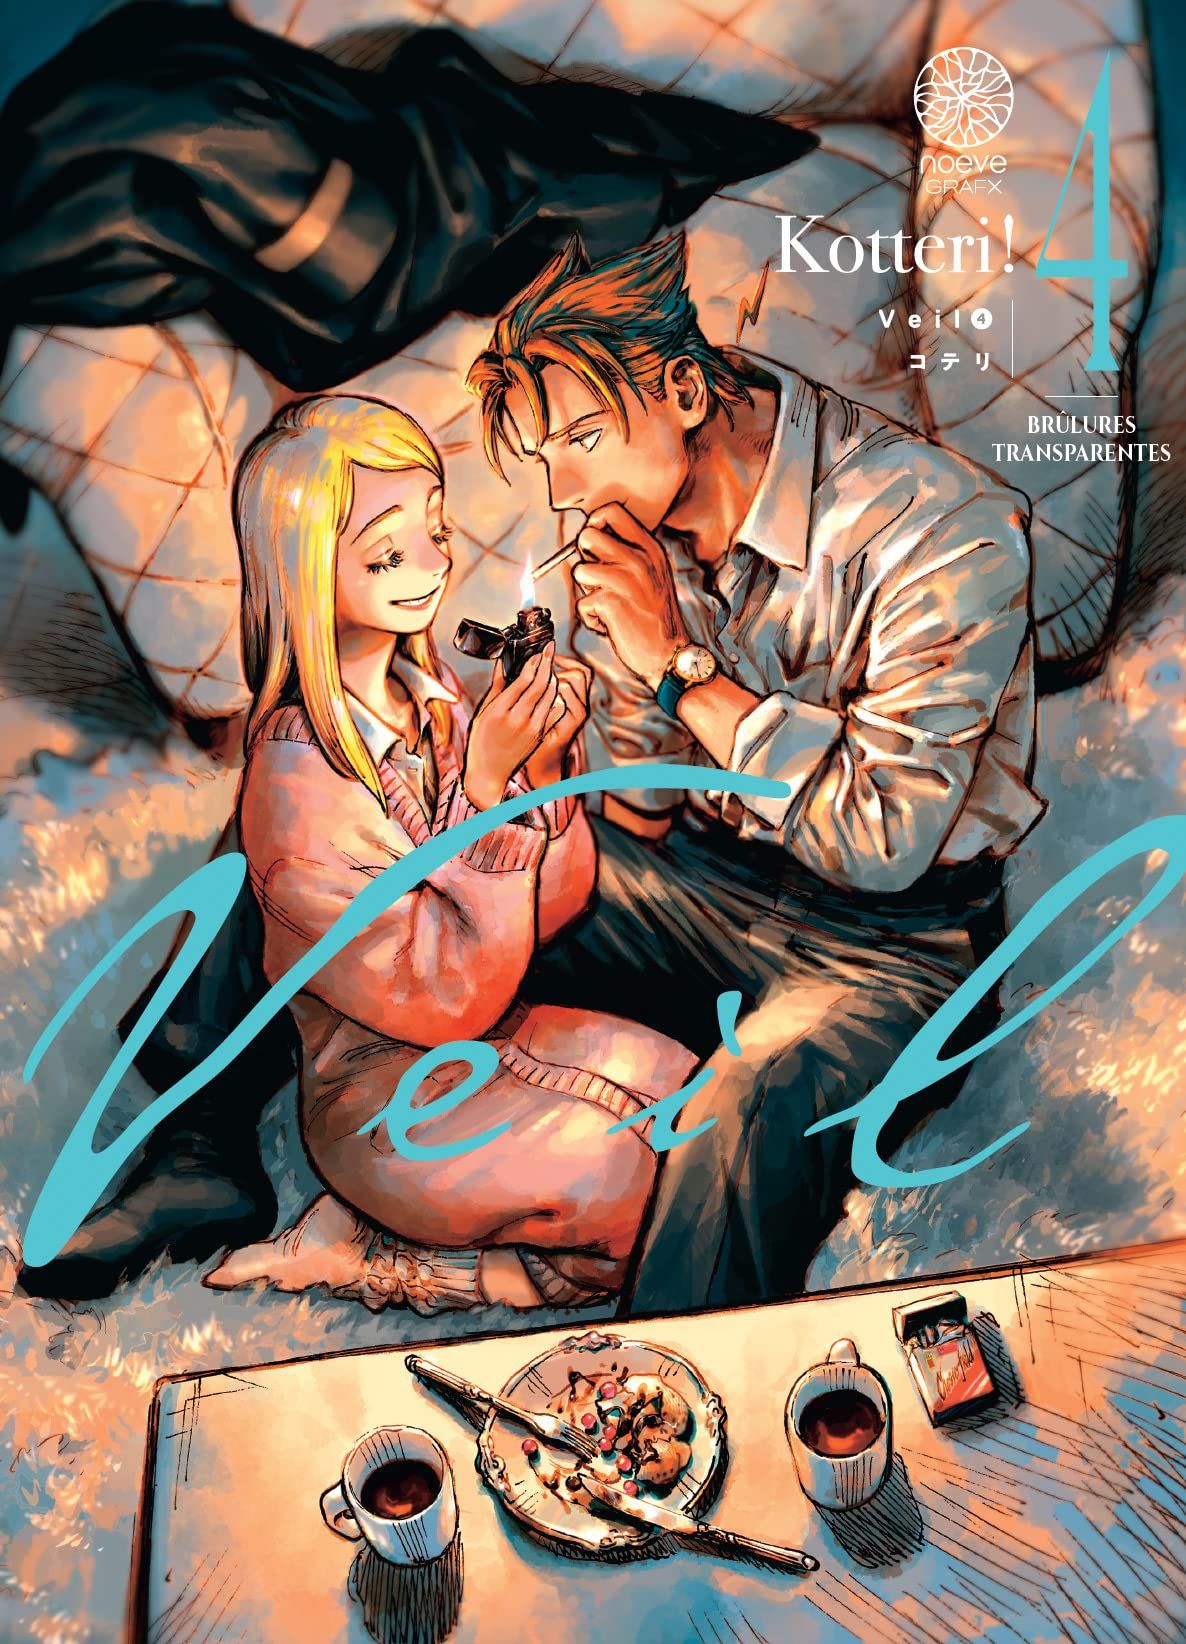  Veil T4, manga chez Noeve Grafx de Kotteri